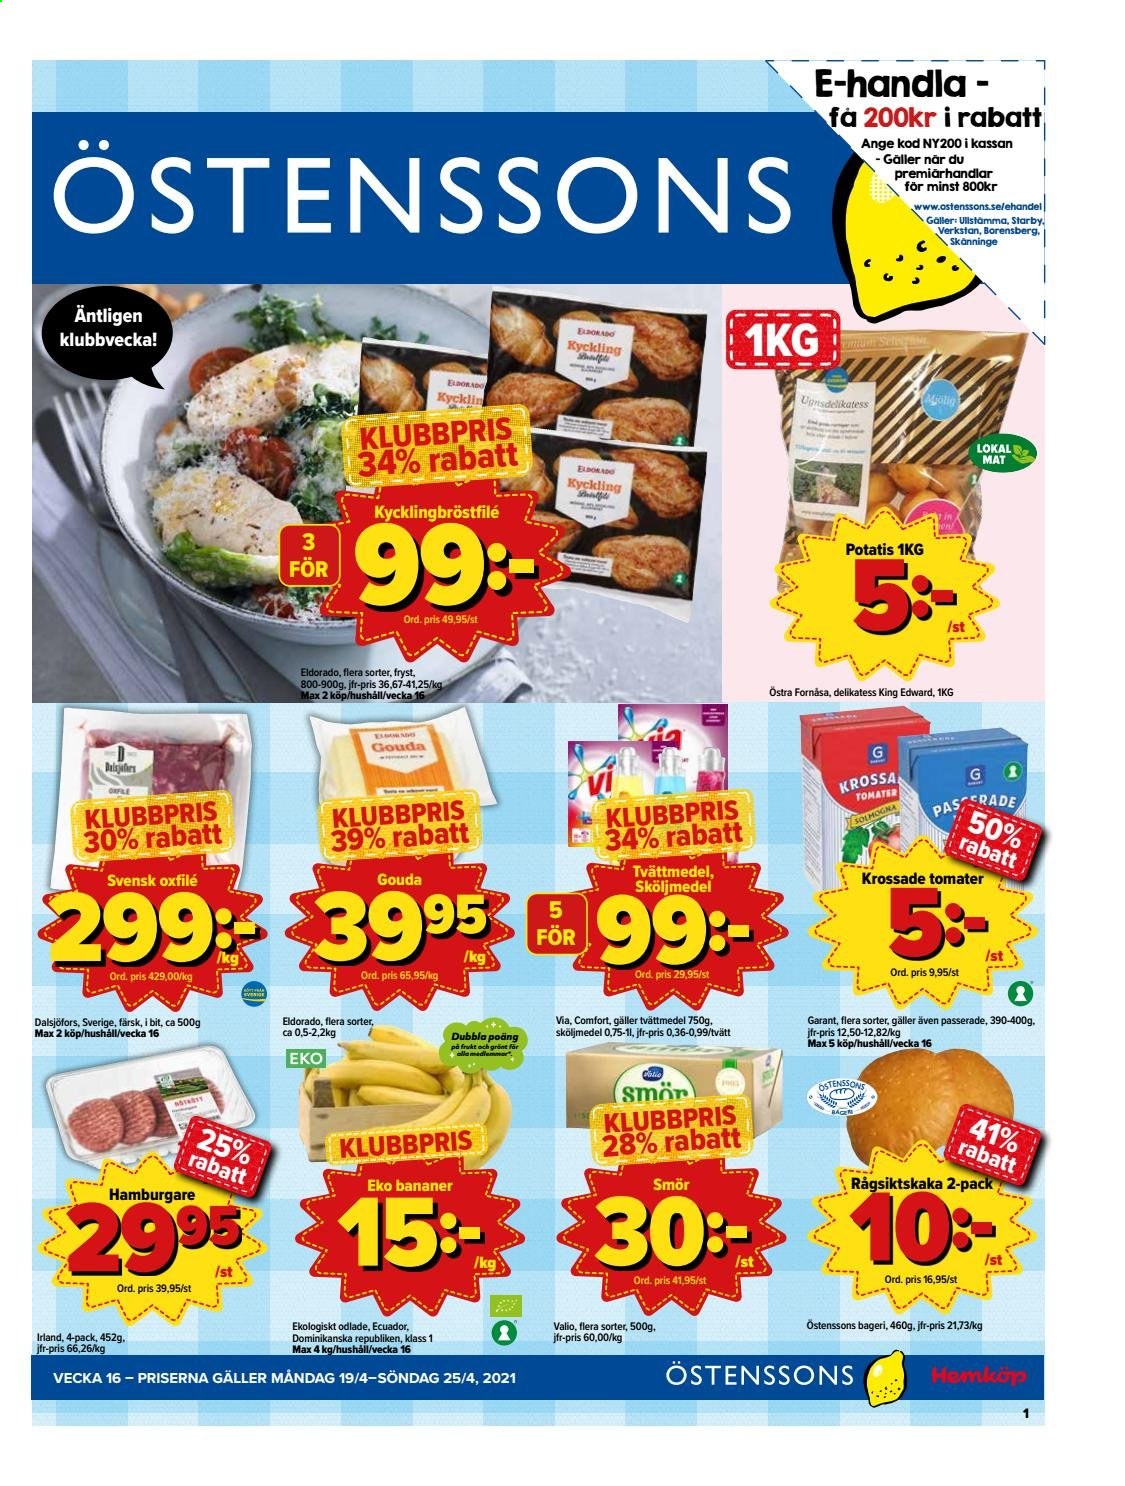 thumbnail - Östenssons reklamblad - 19/4 2021 - 25/4 2021 - varor från reklamblad - kyckling, kycklingbröstfilé, bananer, oxfilé, tomater, potatis, hamburgare, gouda, smör, krossade tomater, tvättmedel. Sida 1.